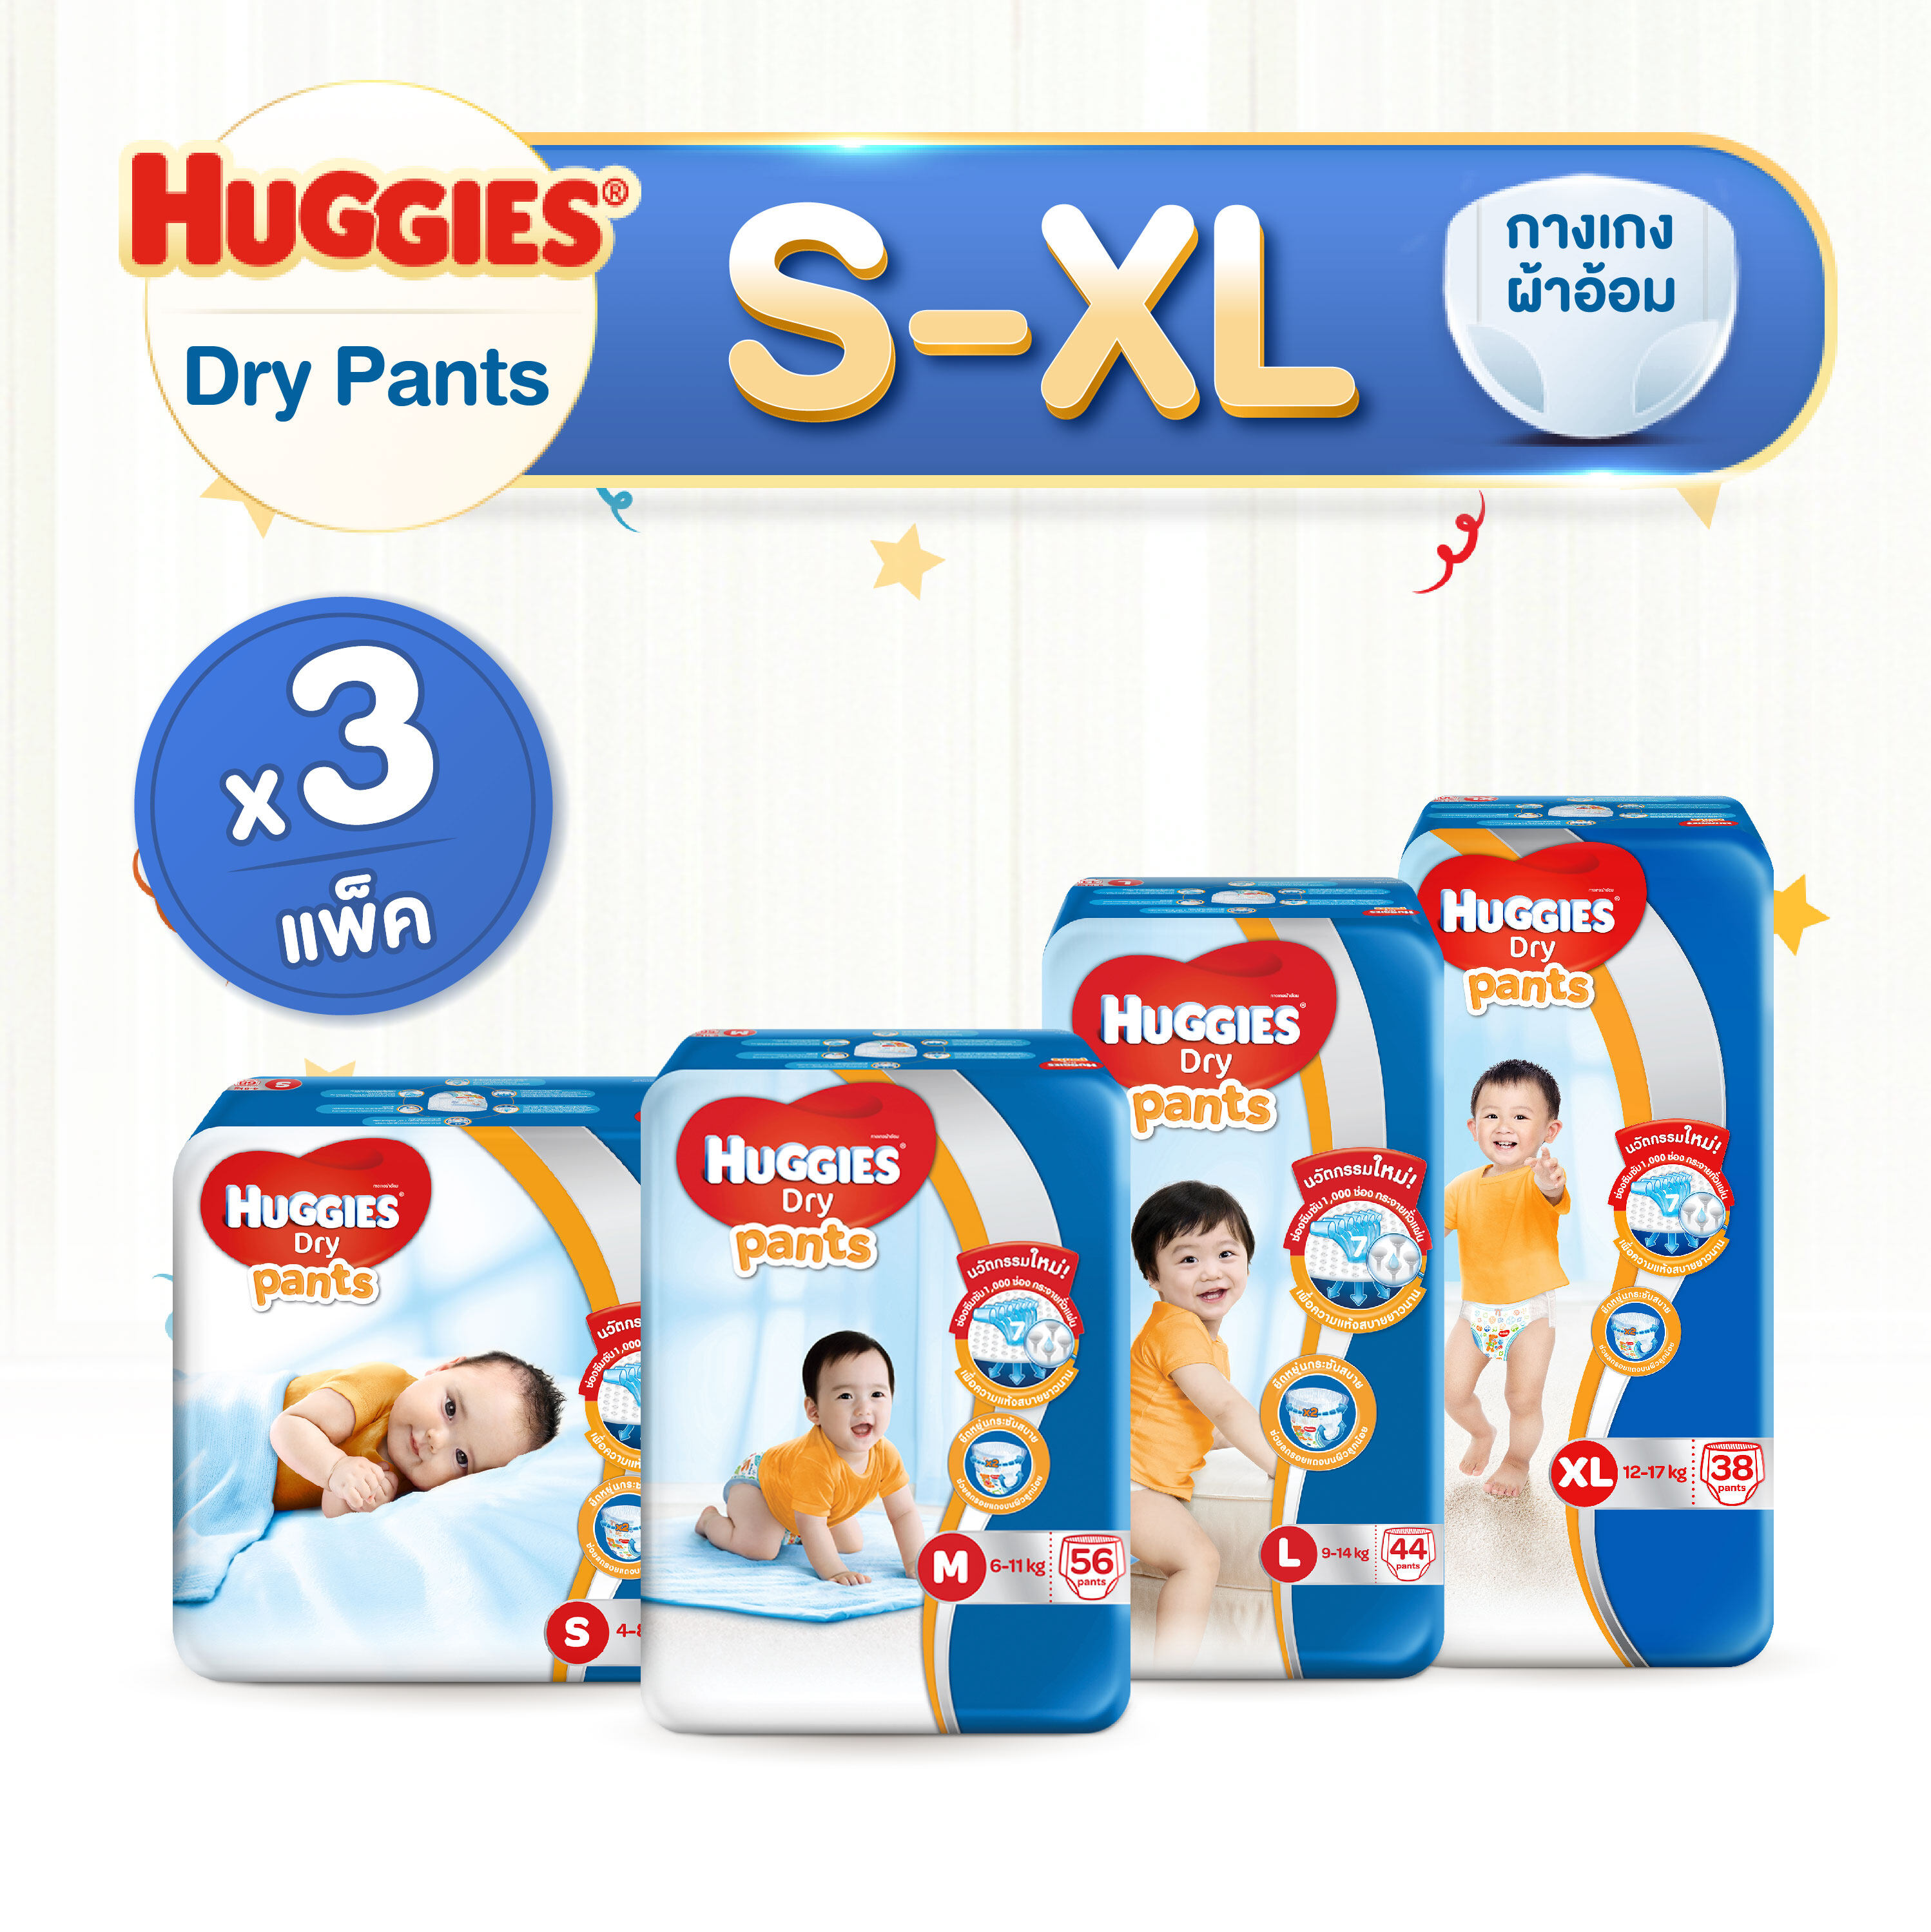 ซื้อที่ไหน (เลือกไซส์ด้านในค่ะ) [ยกลัง! 3 แพ็ค] Huggies Dry Pant Diapers ฮักกี้ส์ ดราย แพ้นท์ ผ้าอ้อมเด็ก กางเกงผ้าอ้อม แพมเพิส ผ้าอ้อมเด็กชาย - หญิง